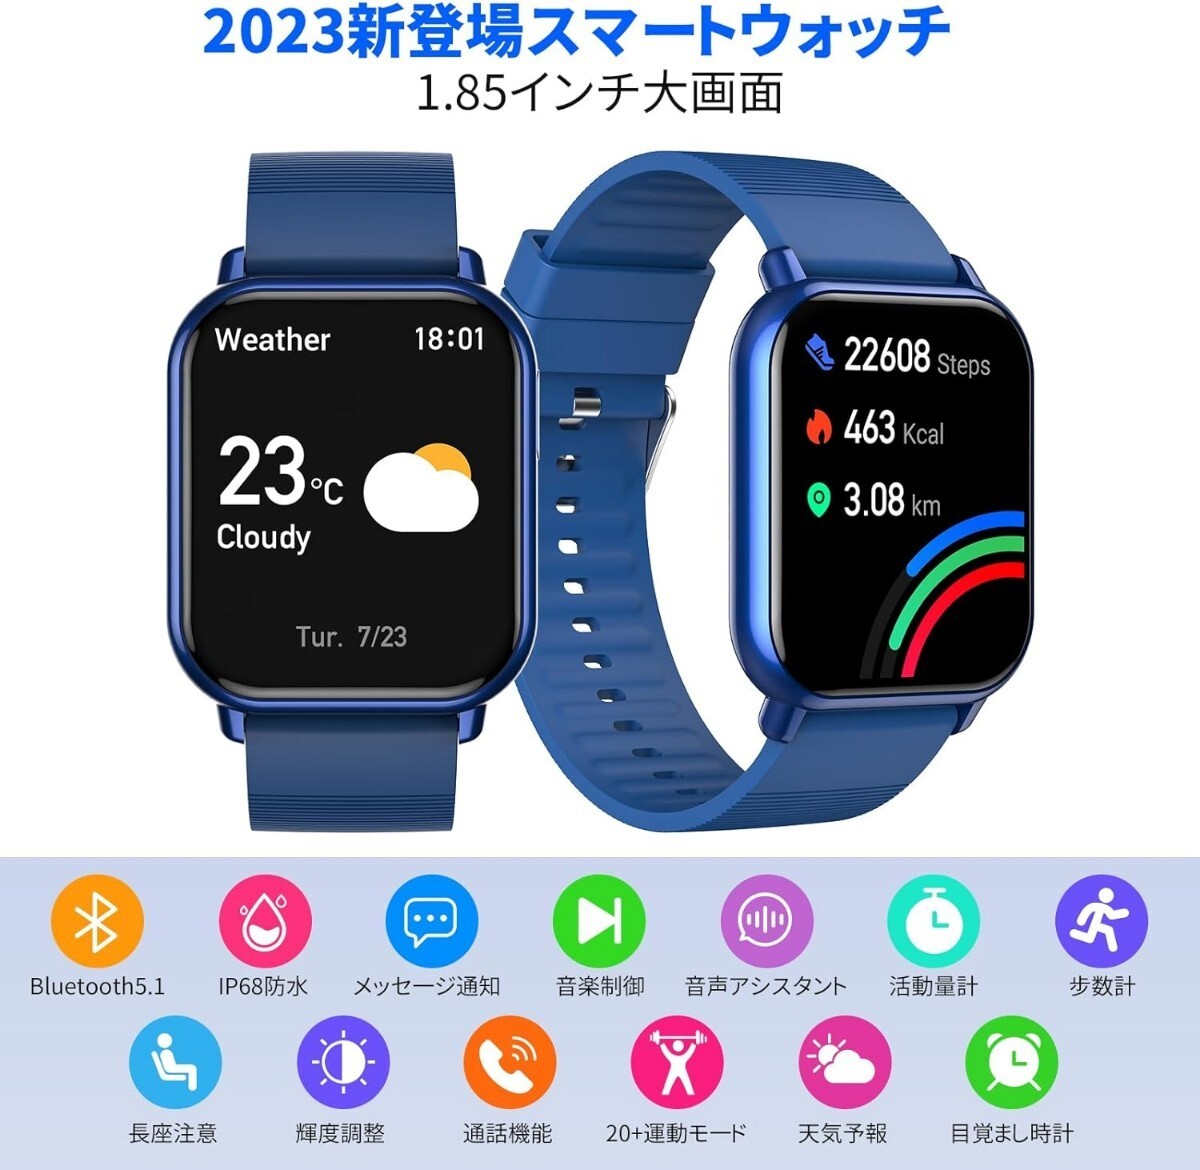 ◆新品 本体 スマートウォッチ 着信通知 ブルー 青 防水 1.85インチ大画面 腕時計 Bluetooth iPhone対応 Android対応 日本語説明書 